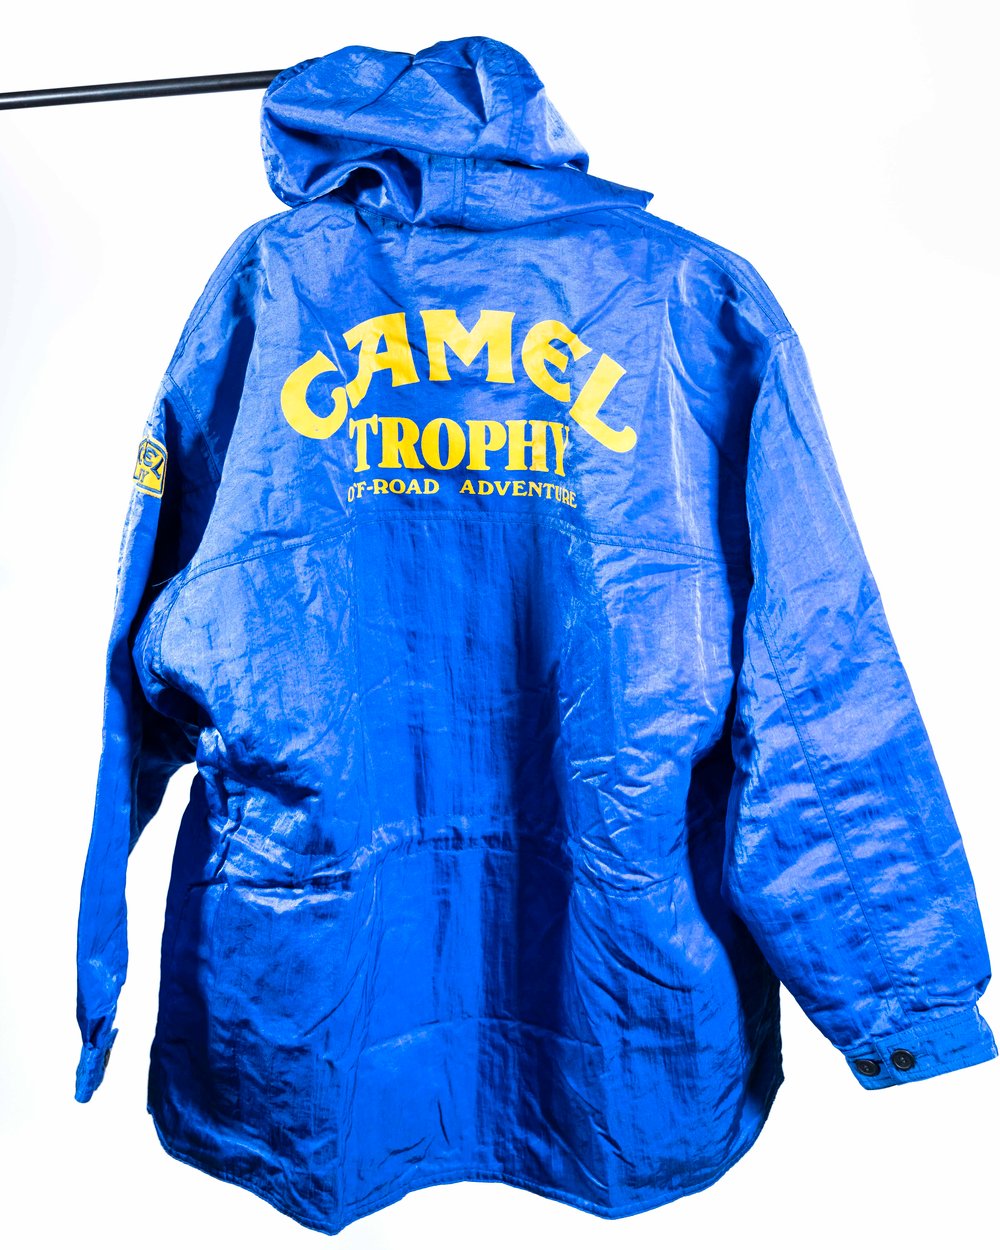 Camel Trophy Bench Coat (Large)